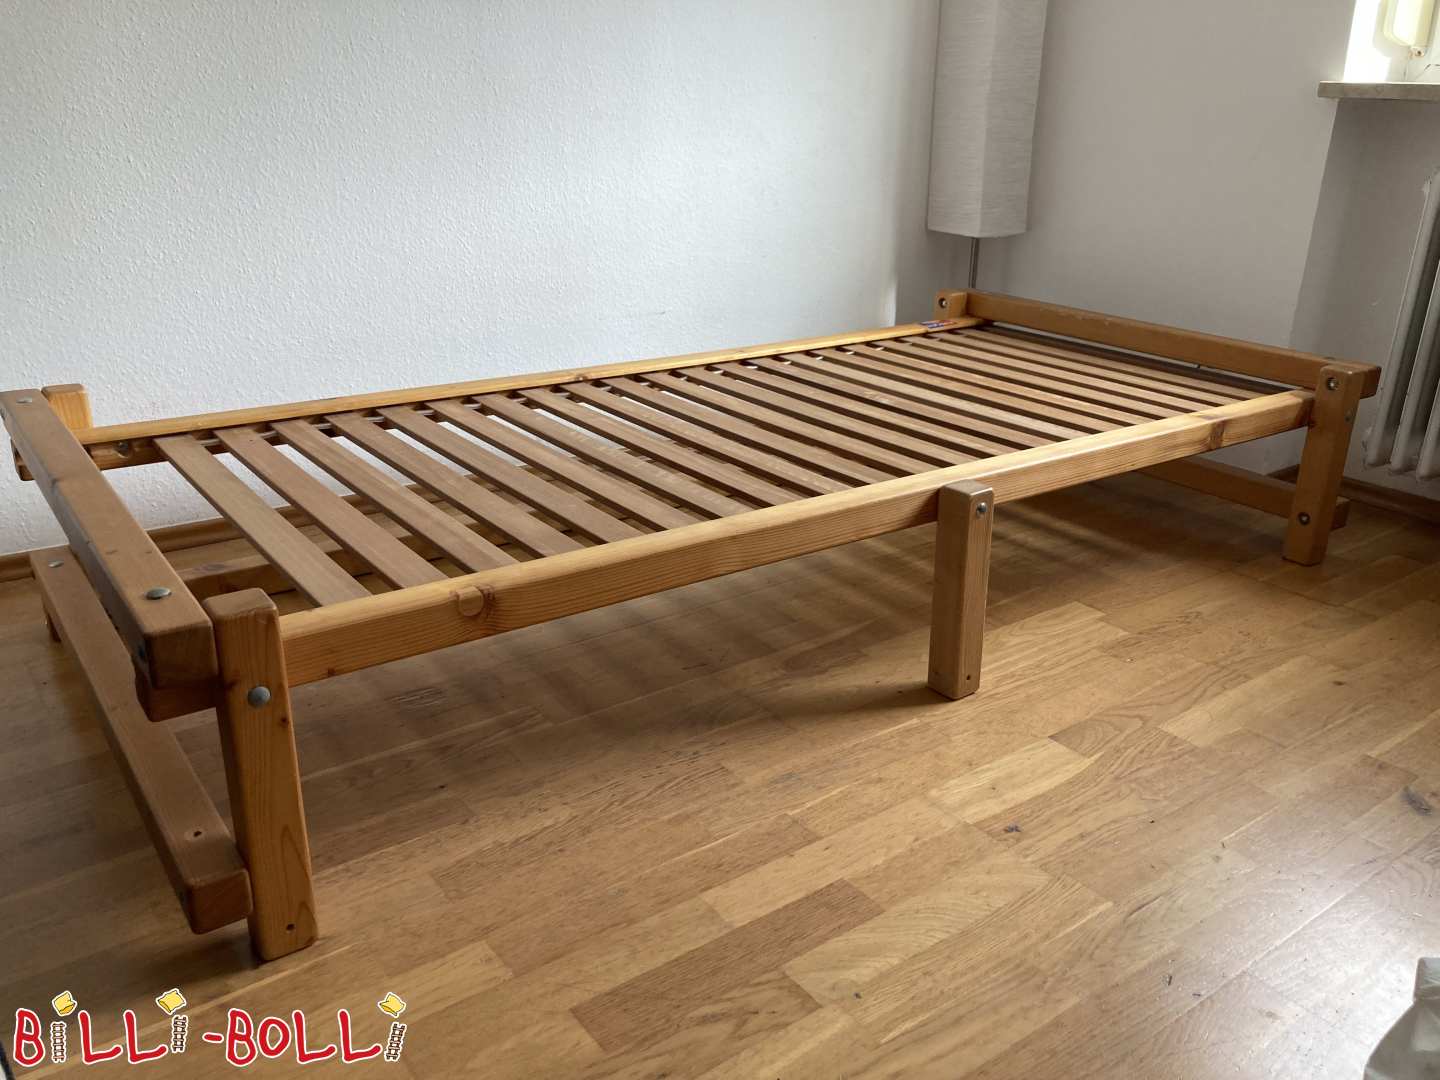 Nizka mladinska postelja, naoljena smreka (Category: Podstrešna postelja, ki raste z otrokom used)